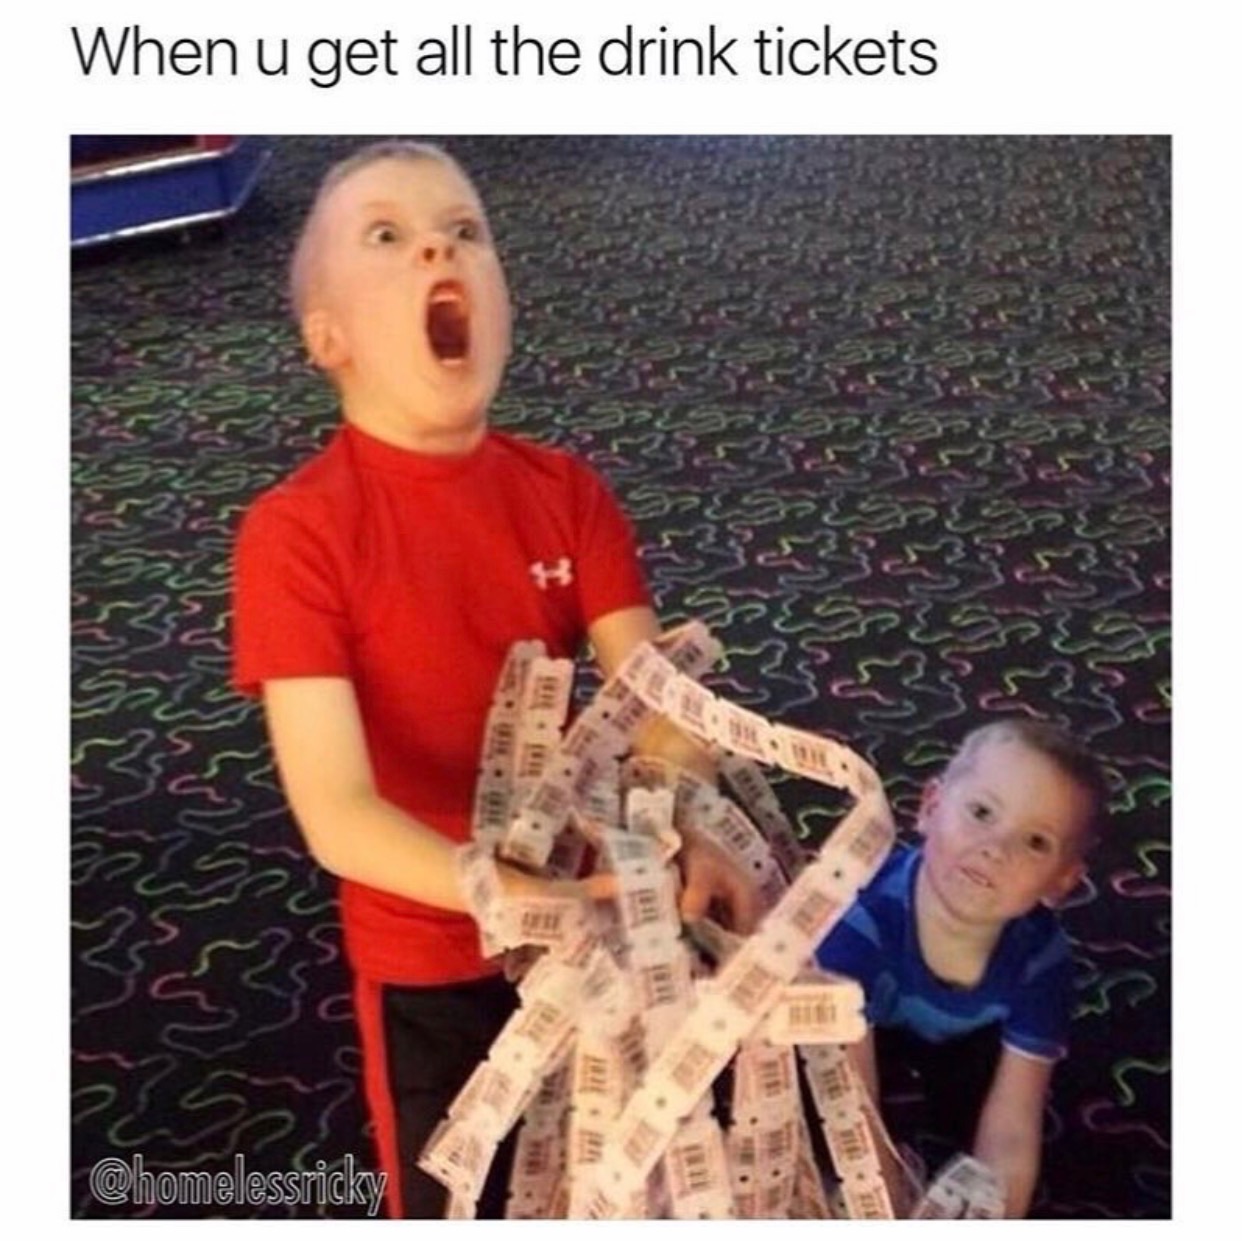 kid winning tickets - When u get all the drink tickets 11